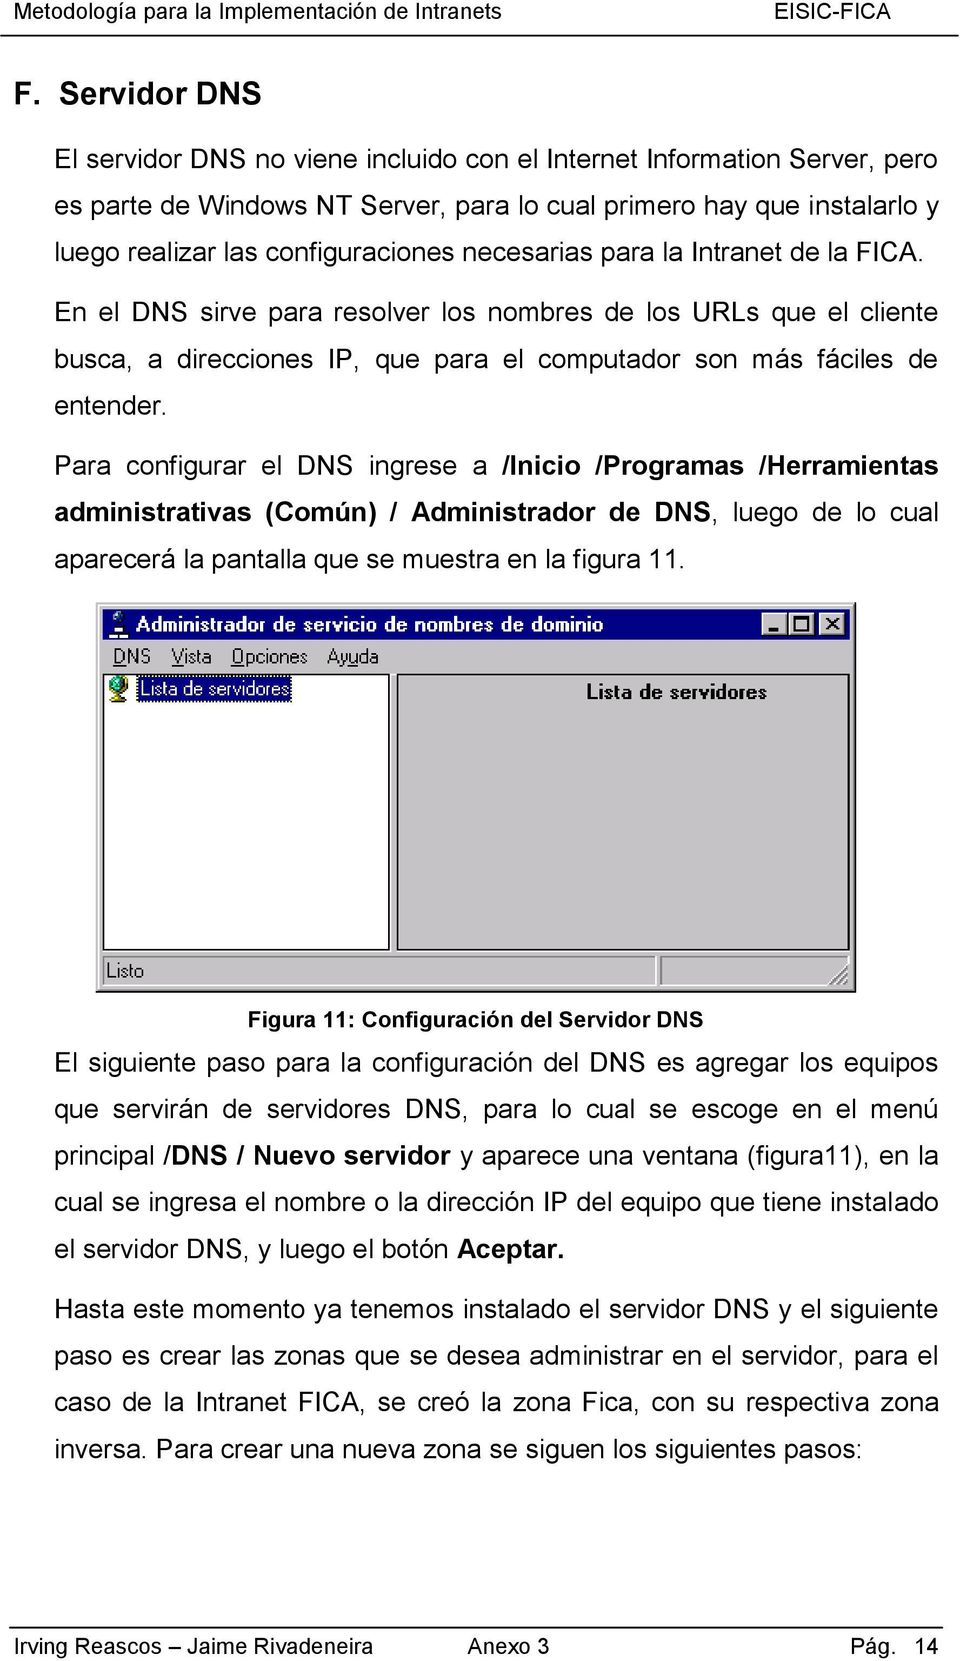 Para configurar el DNS ingrese a /Inicio /Programas /Herramientas administrativas (Común) / Administrador de DNS, luego de lo cual aparecerá la pantalla que se muestra en la figura 11.